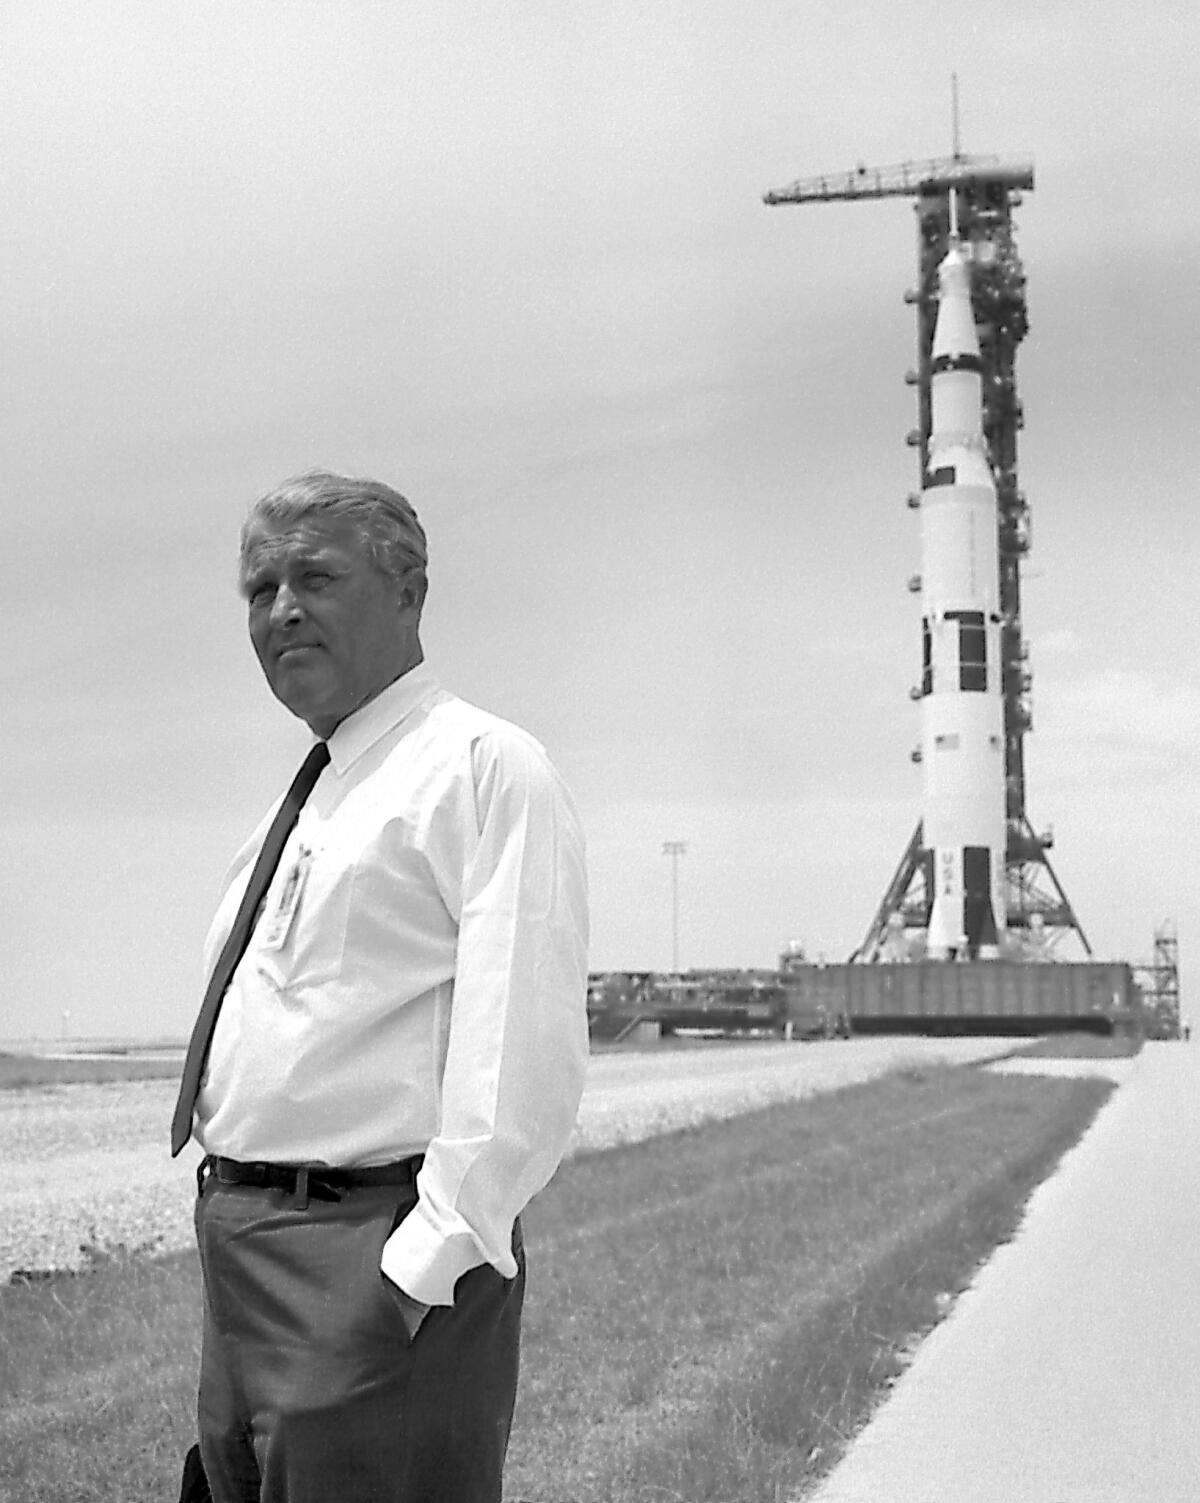 Wernher von Braun and the Saturn V rocket that propelled Apollo 11. The rocket was developed by the Marshall Space Flight Center in Huntsville, Ala., under von Braun's direction.